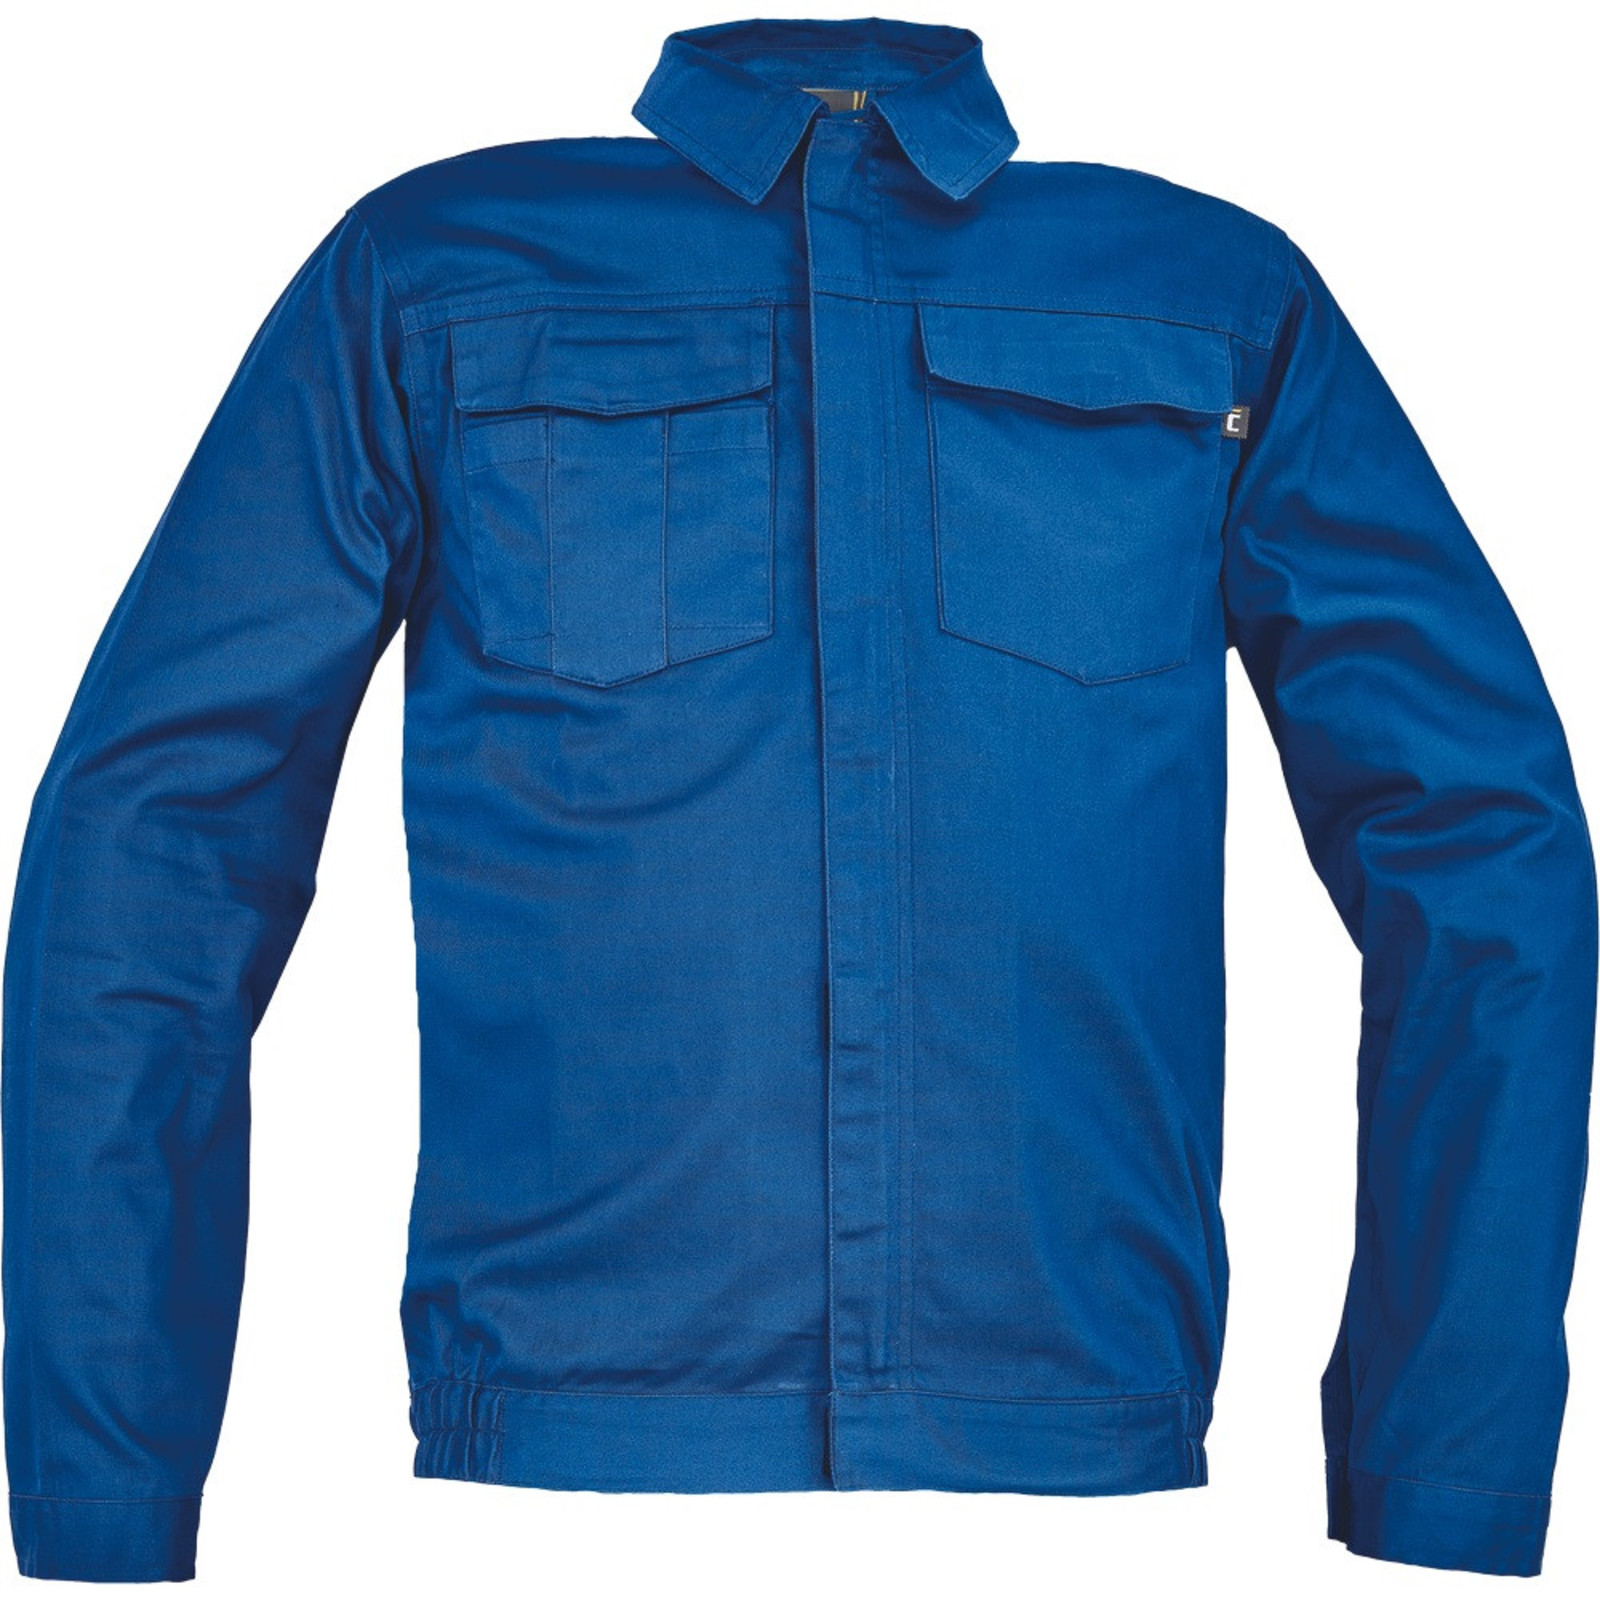 Pánska ľahká pracovná bunda Cerva Ciudades Basic Zaragoza - veľkosť: 54, farba: royal blue